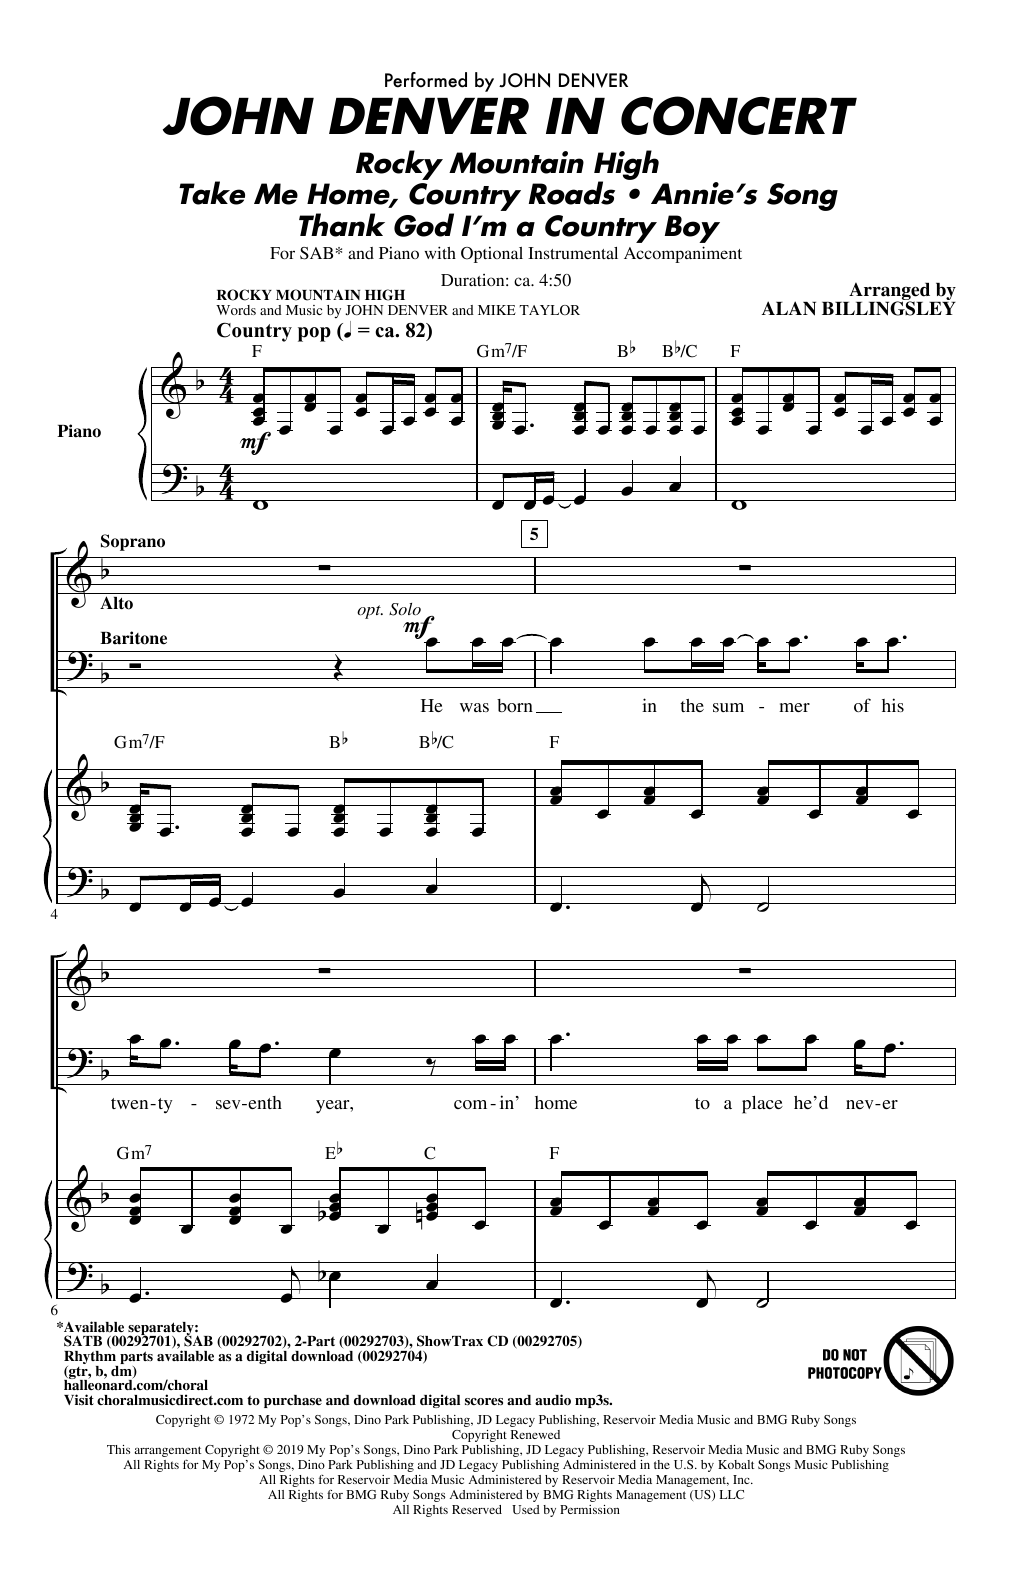 John Denver John Denver In Concert (arr. Alan Billingsley) Sheet Music Notes & Chords for SATB Choir - Download or Print PDF